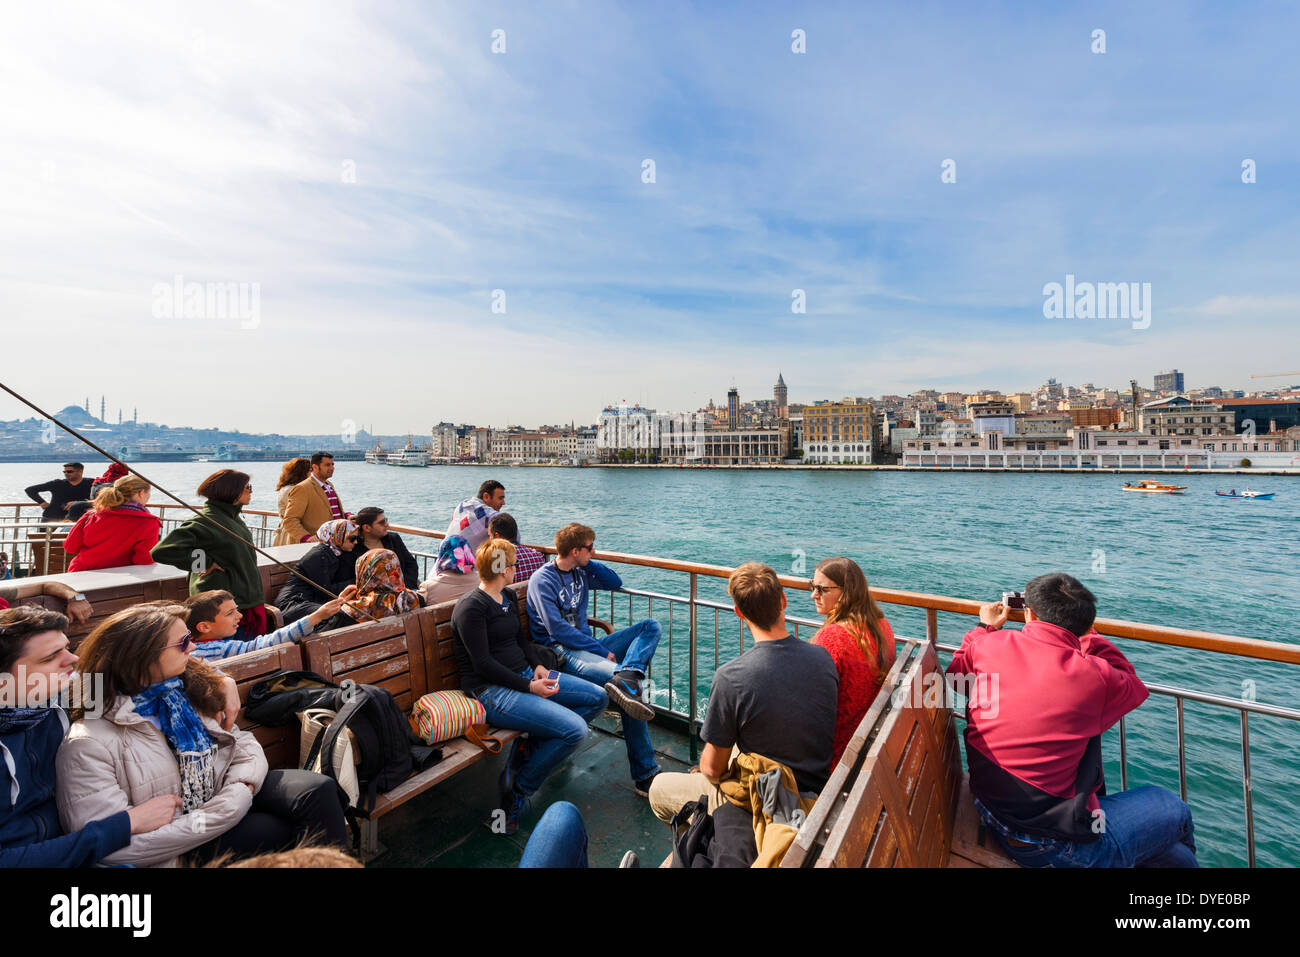 Avis de Beyoglu depuis le pont d'un bateau de croisière Bosphore Sehir Hatlan, Istanbul, Turquie Banque D'Images